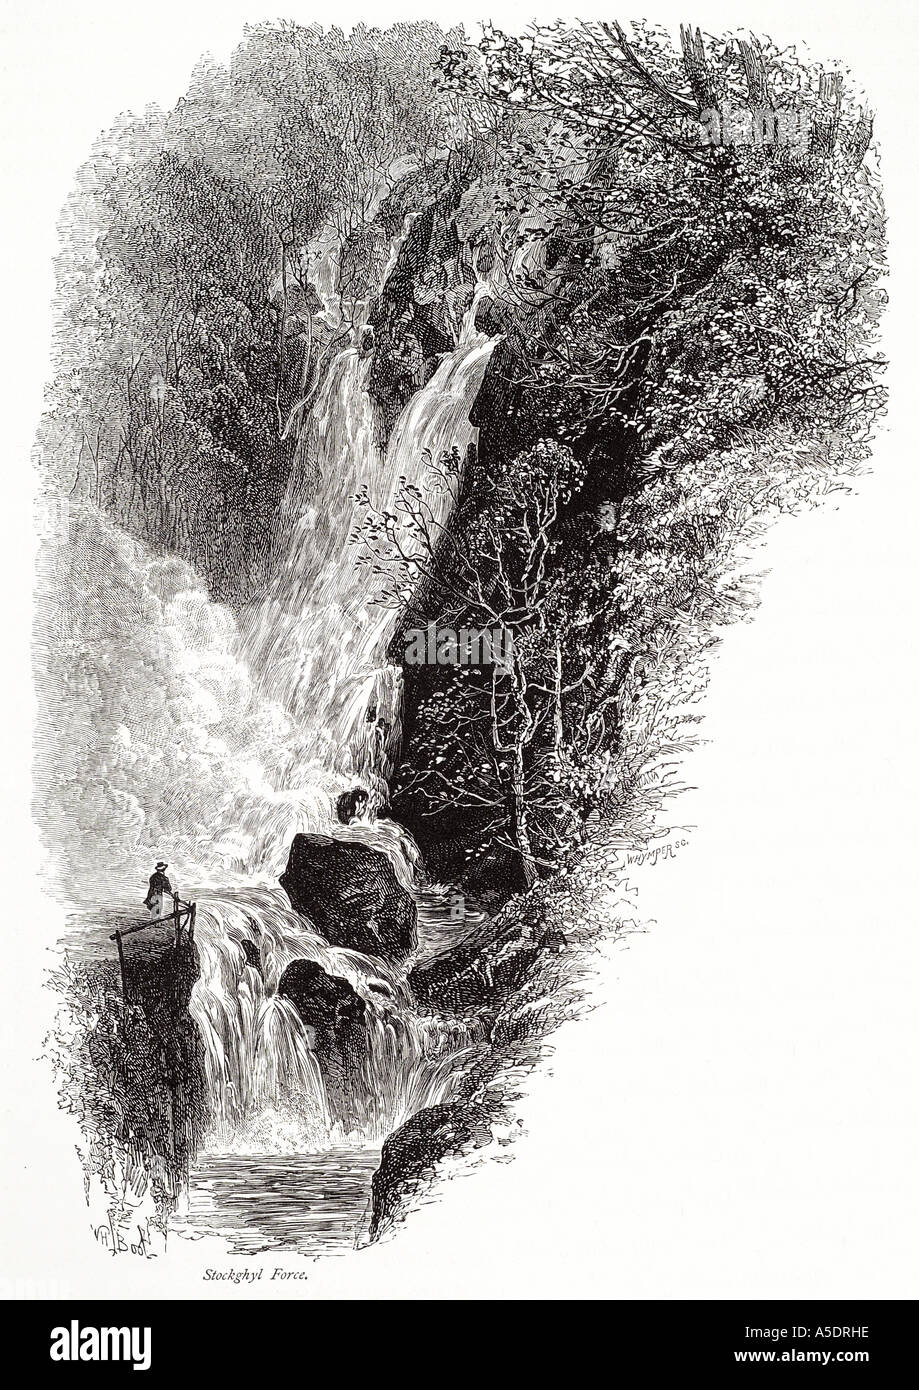 La force de l'eau chute d'stockghyl cascade de la vallée de la rivière boulder rock tree Cumbria lake district national park UK GB Angleterre Anglais Banque D'Images